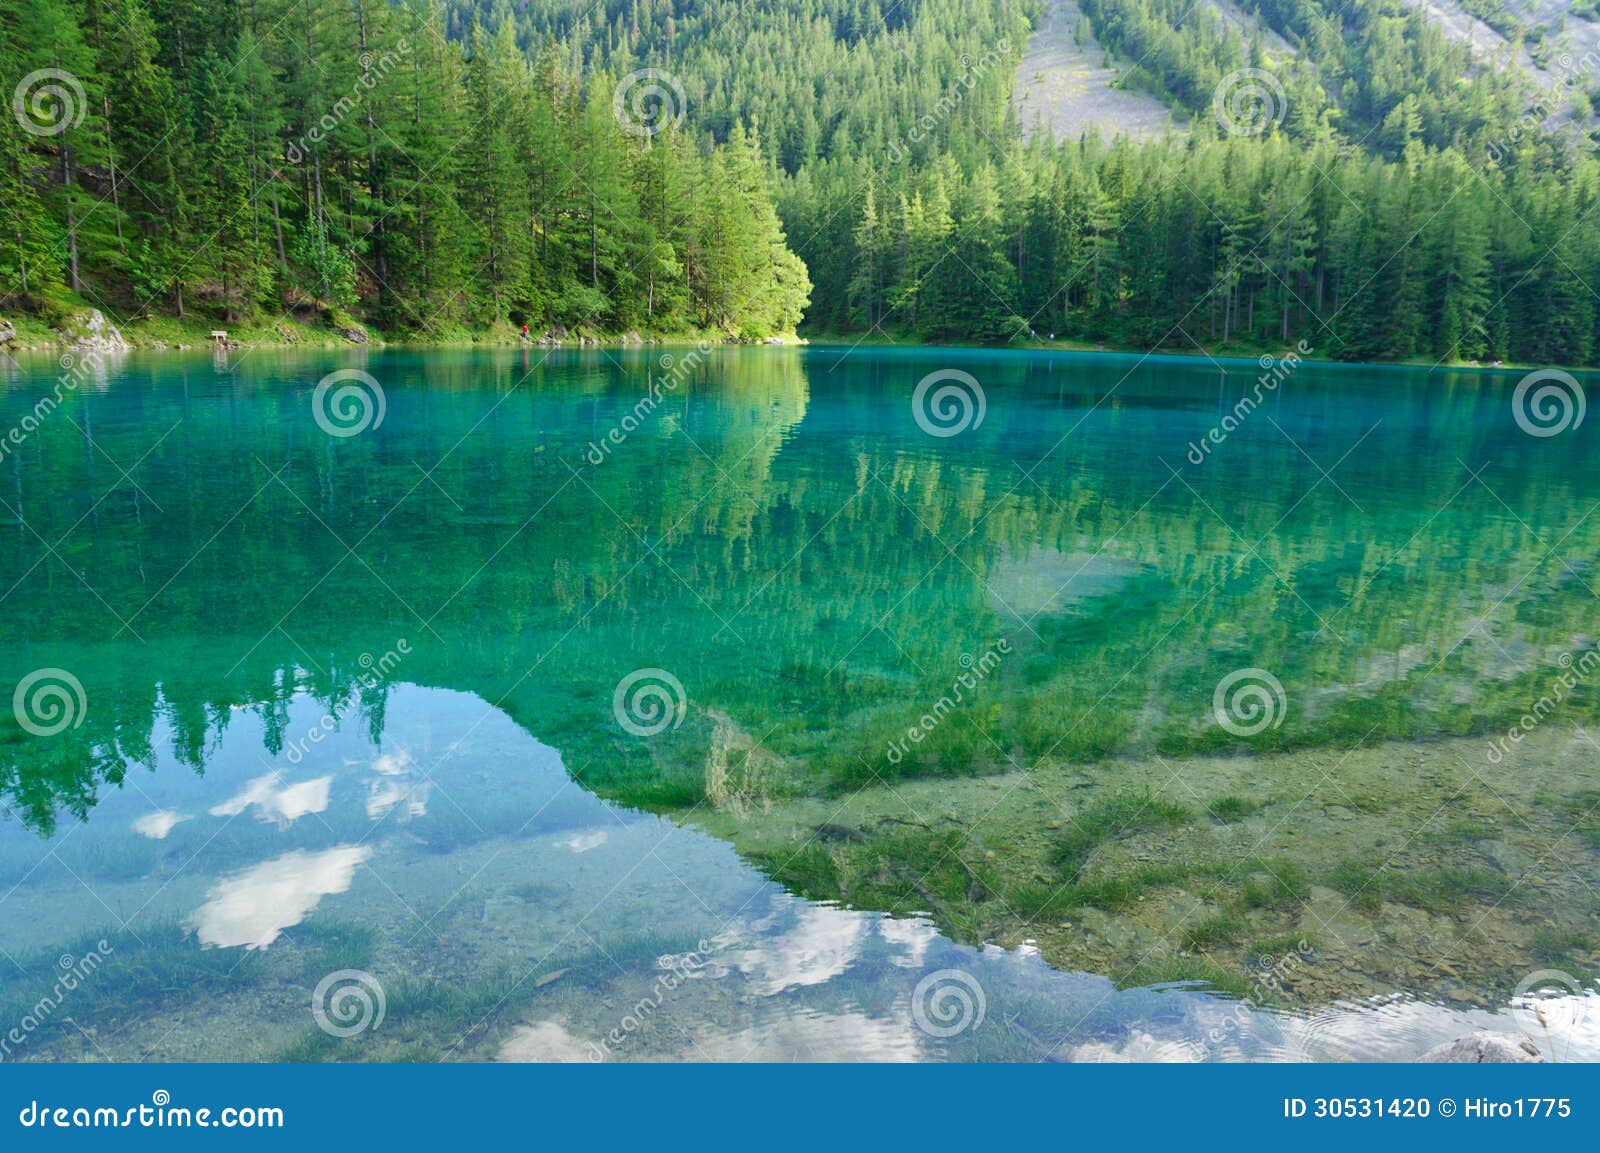 green lake (grÃÂ¼ner see) in bruck an der mur, austria